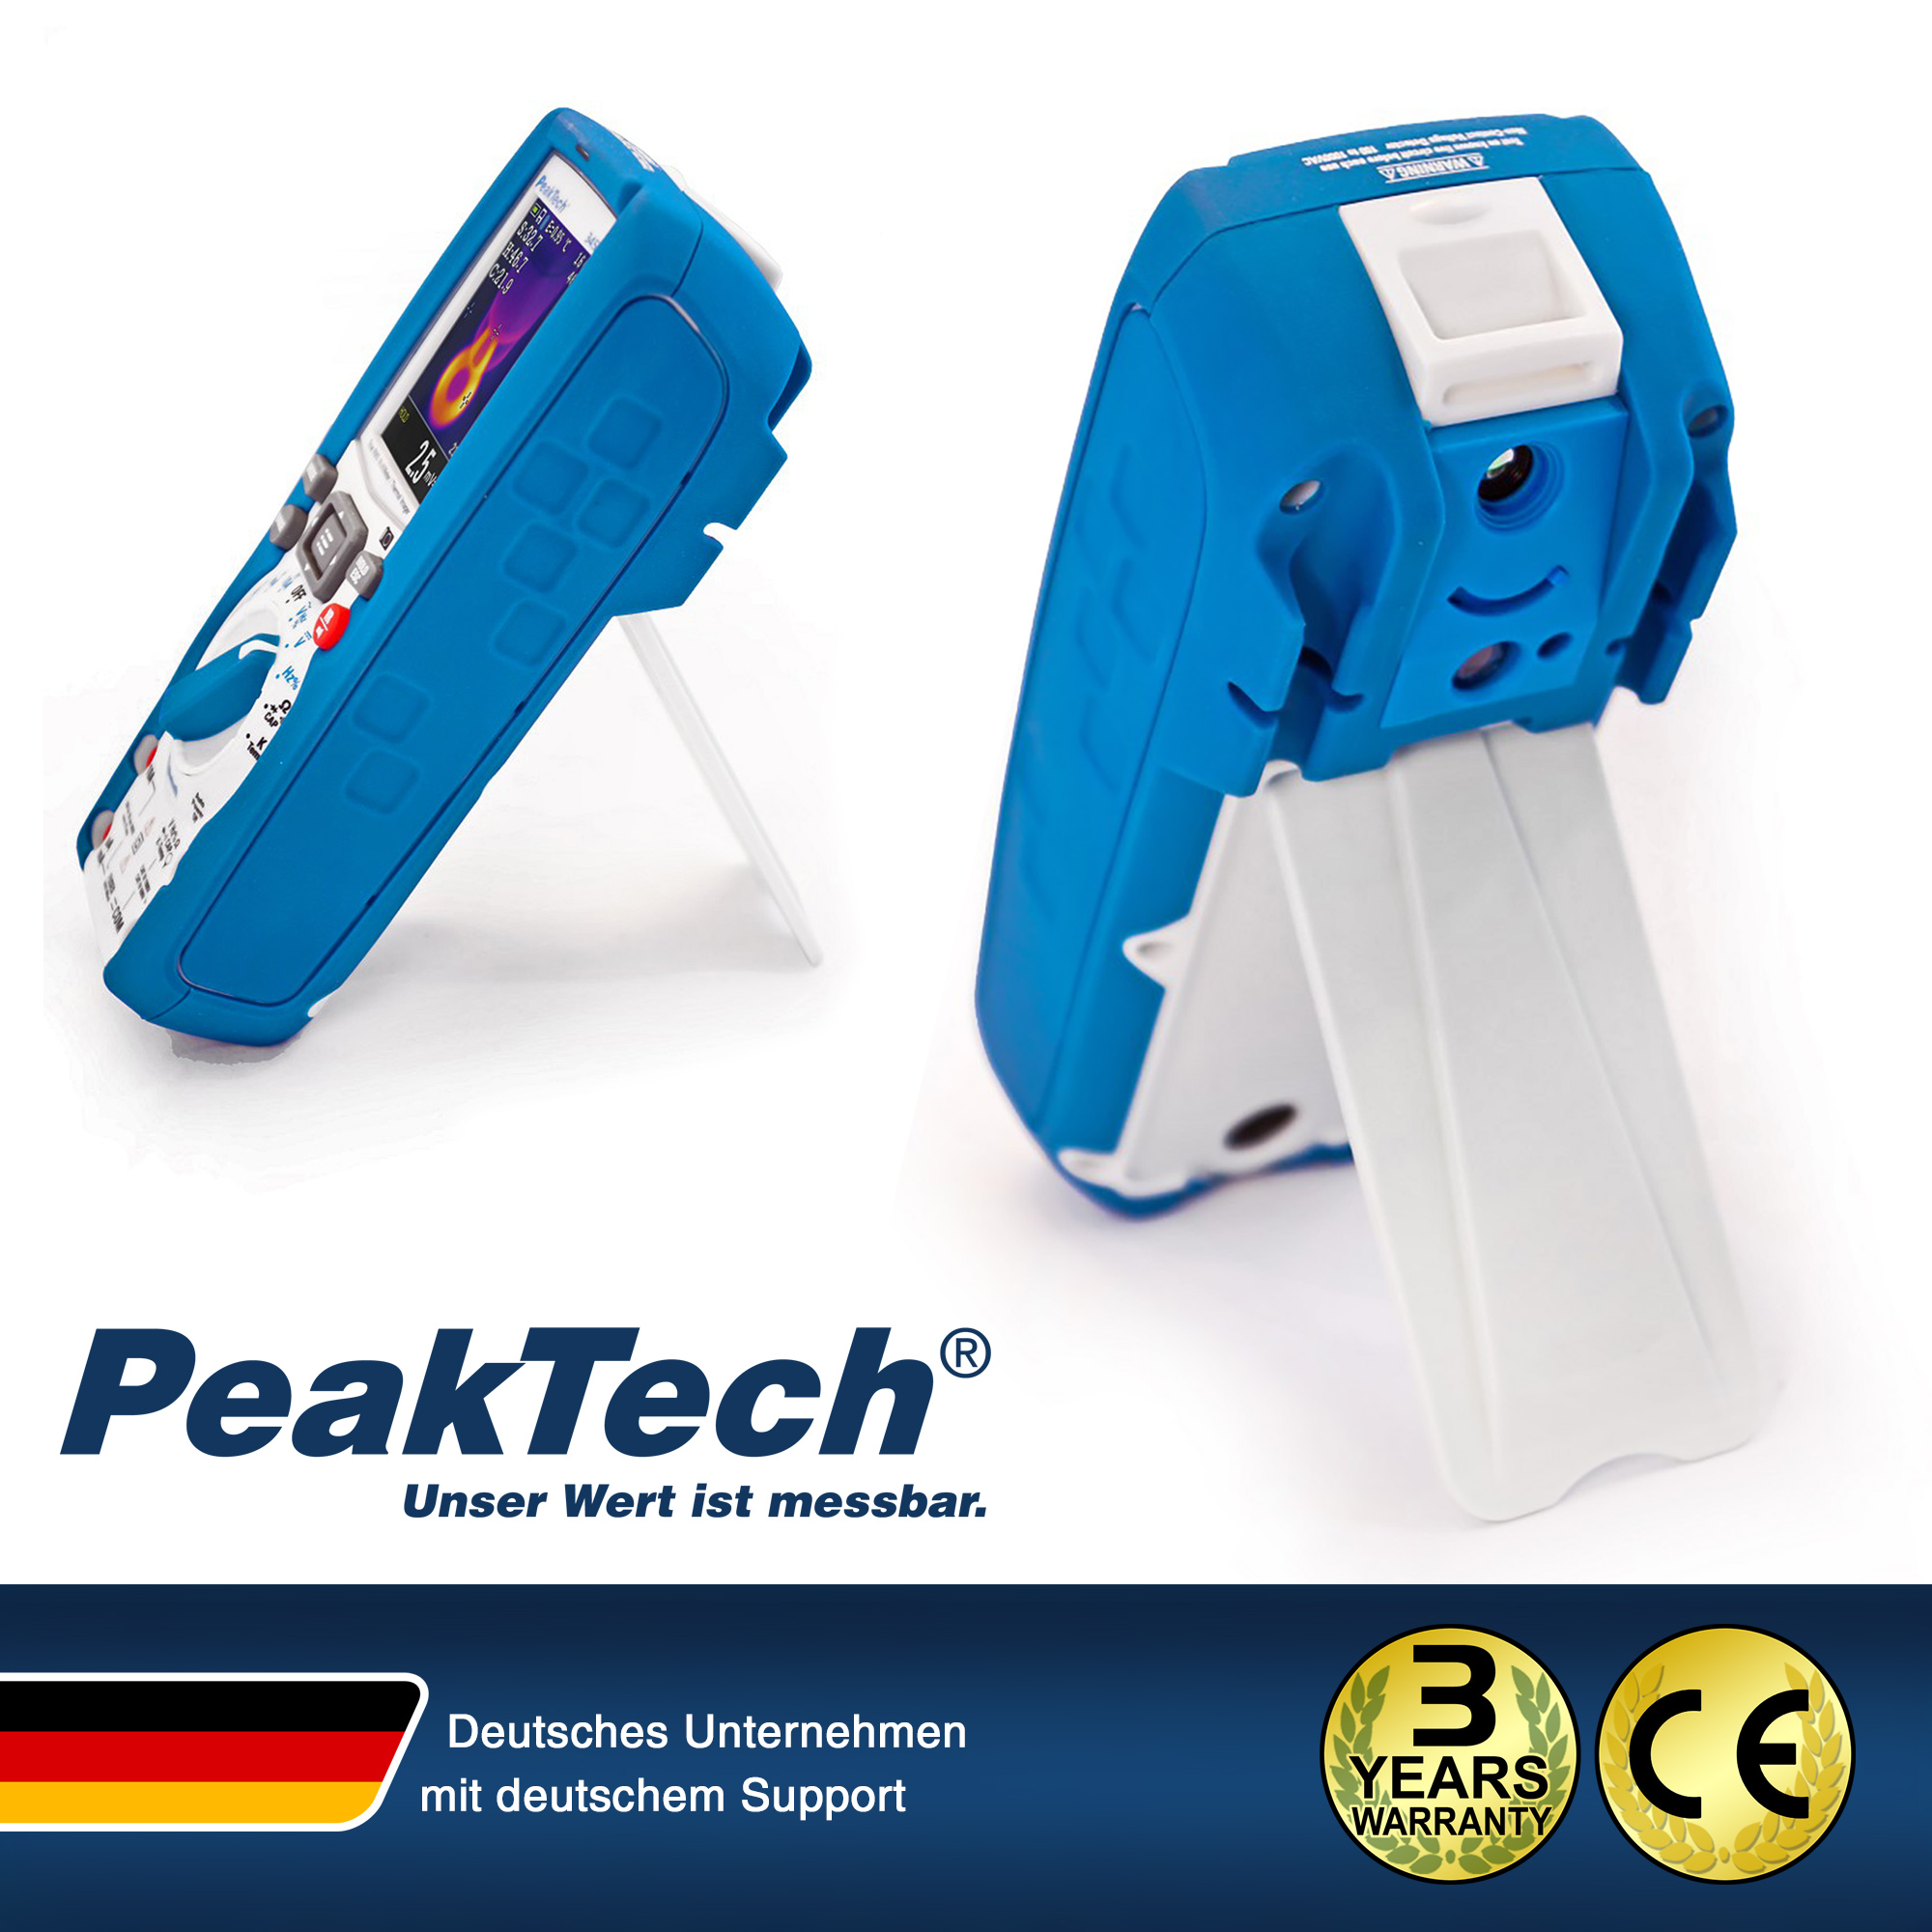 «PeakTech® P 3450 A» Multimetro TrueRMS e termocamera